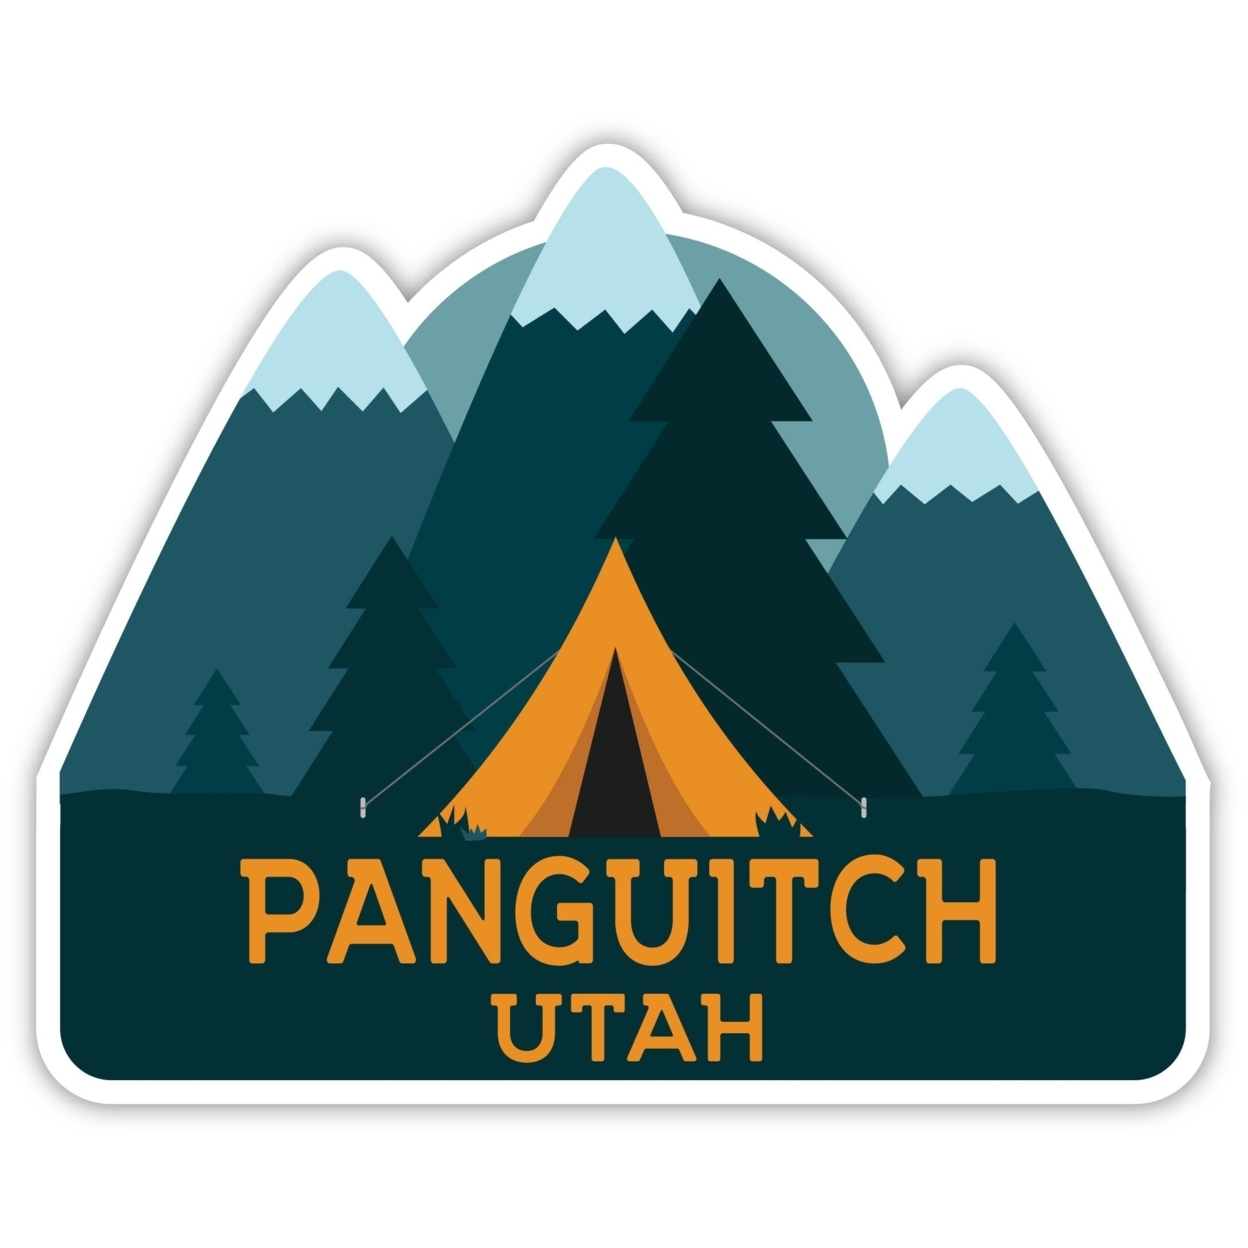 Panguitch Utah Souvenir Decorative Stickers (Choose Theme And Size) - Single Unit, 4-Inch, Tent